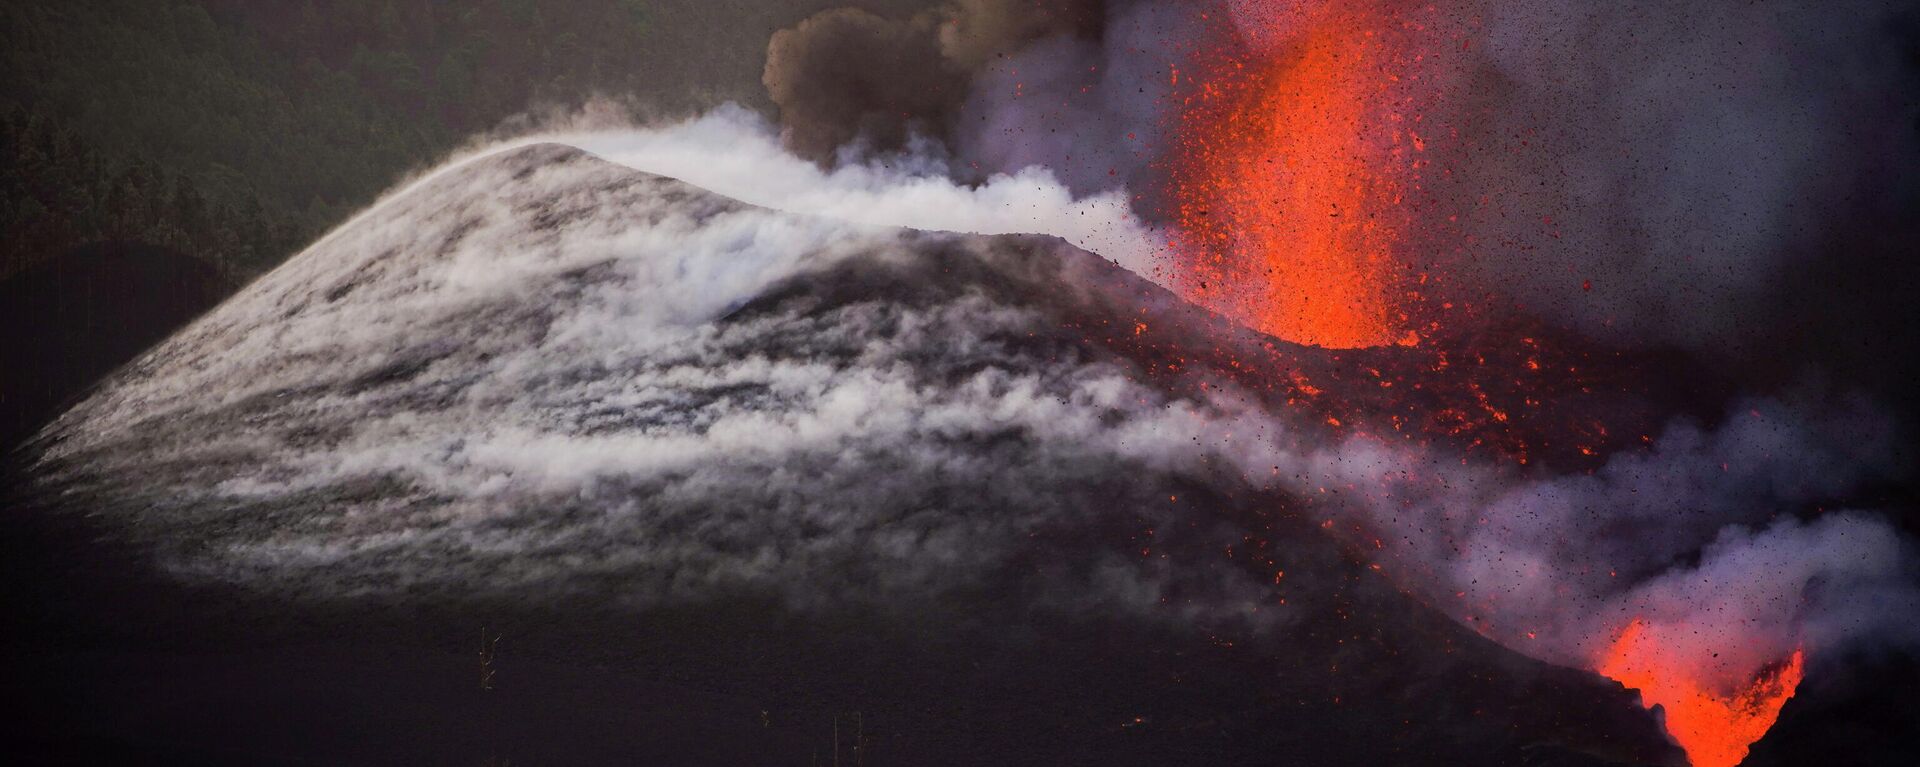 Erupción del volcán en La Palma - Sputnik Mundo, 1920, 15.10.2021